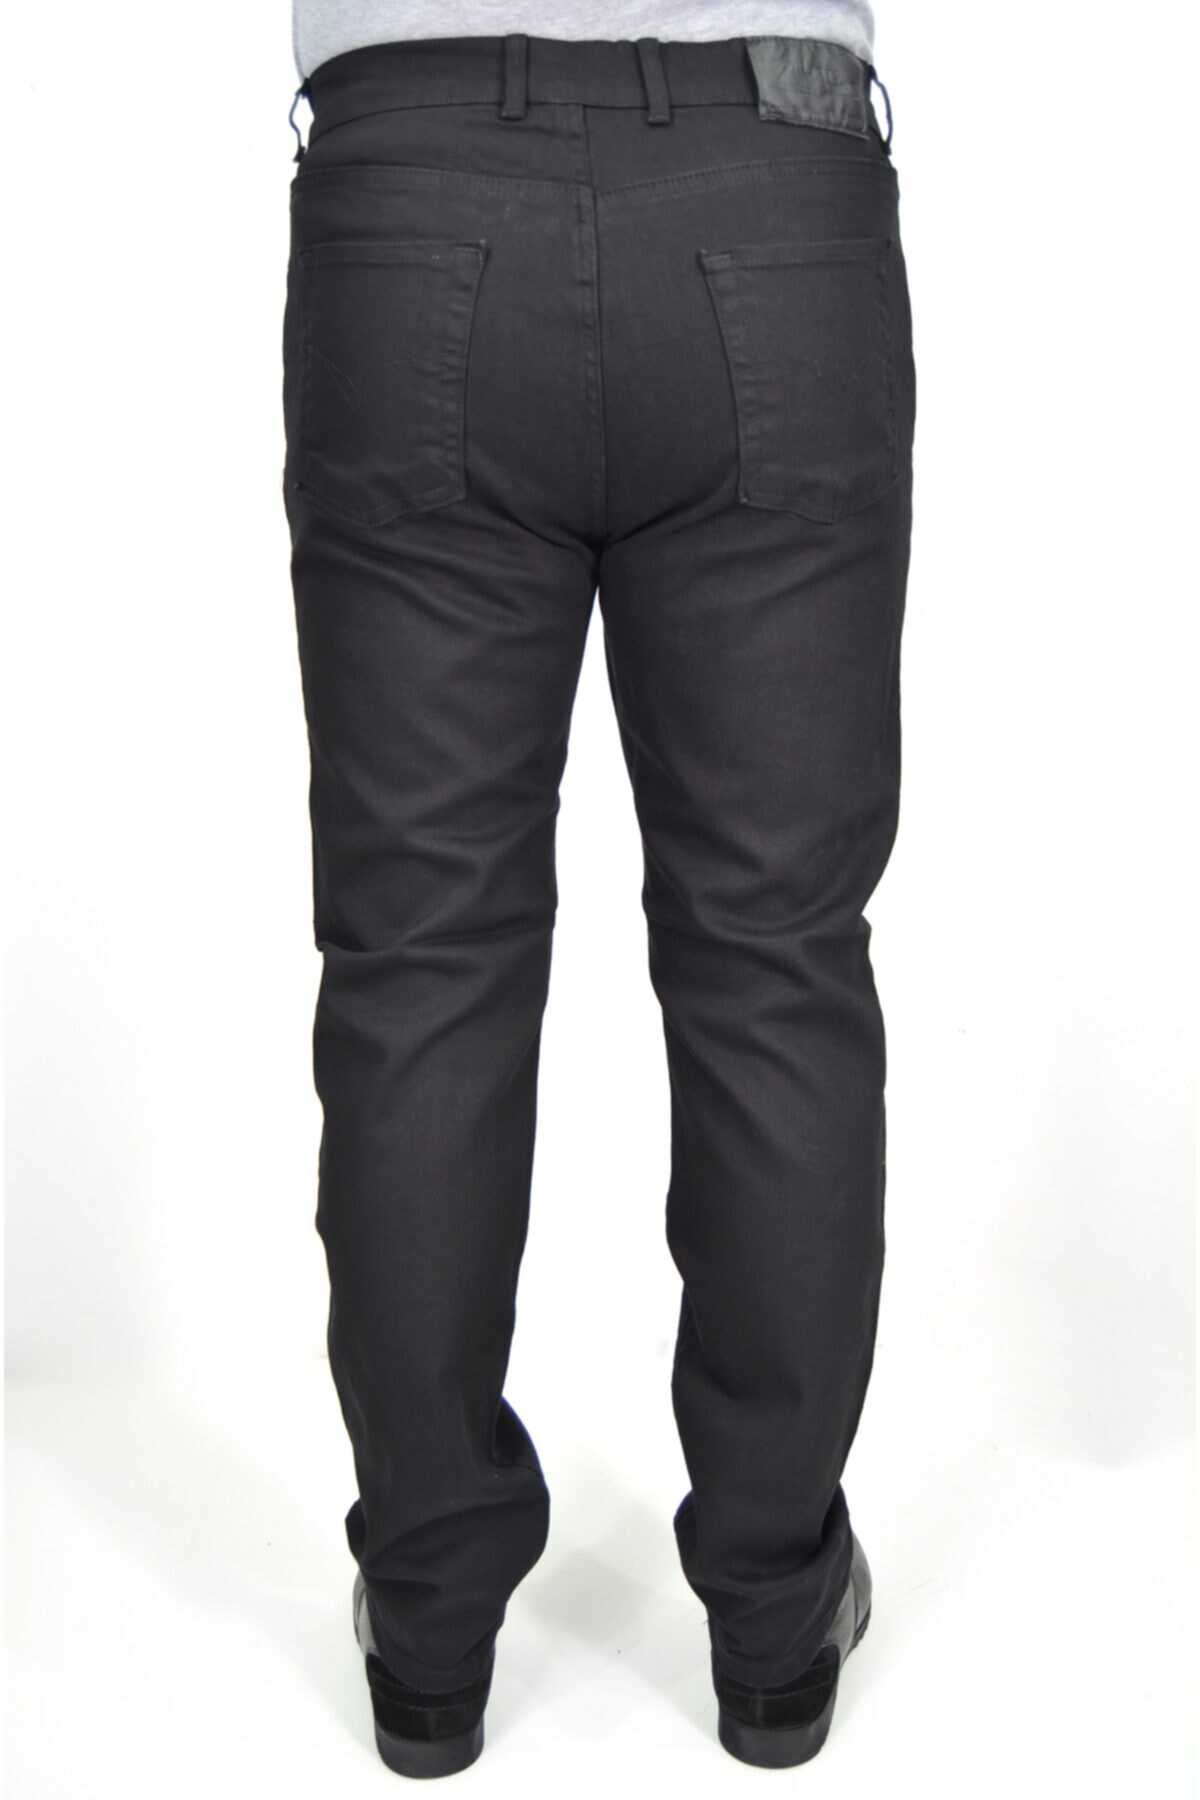 شلوار جین مردانه سایز بزرگ فاق بلند مشکی برند ds danlıspor